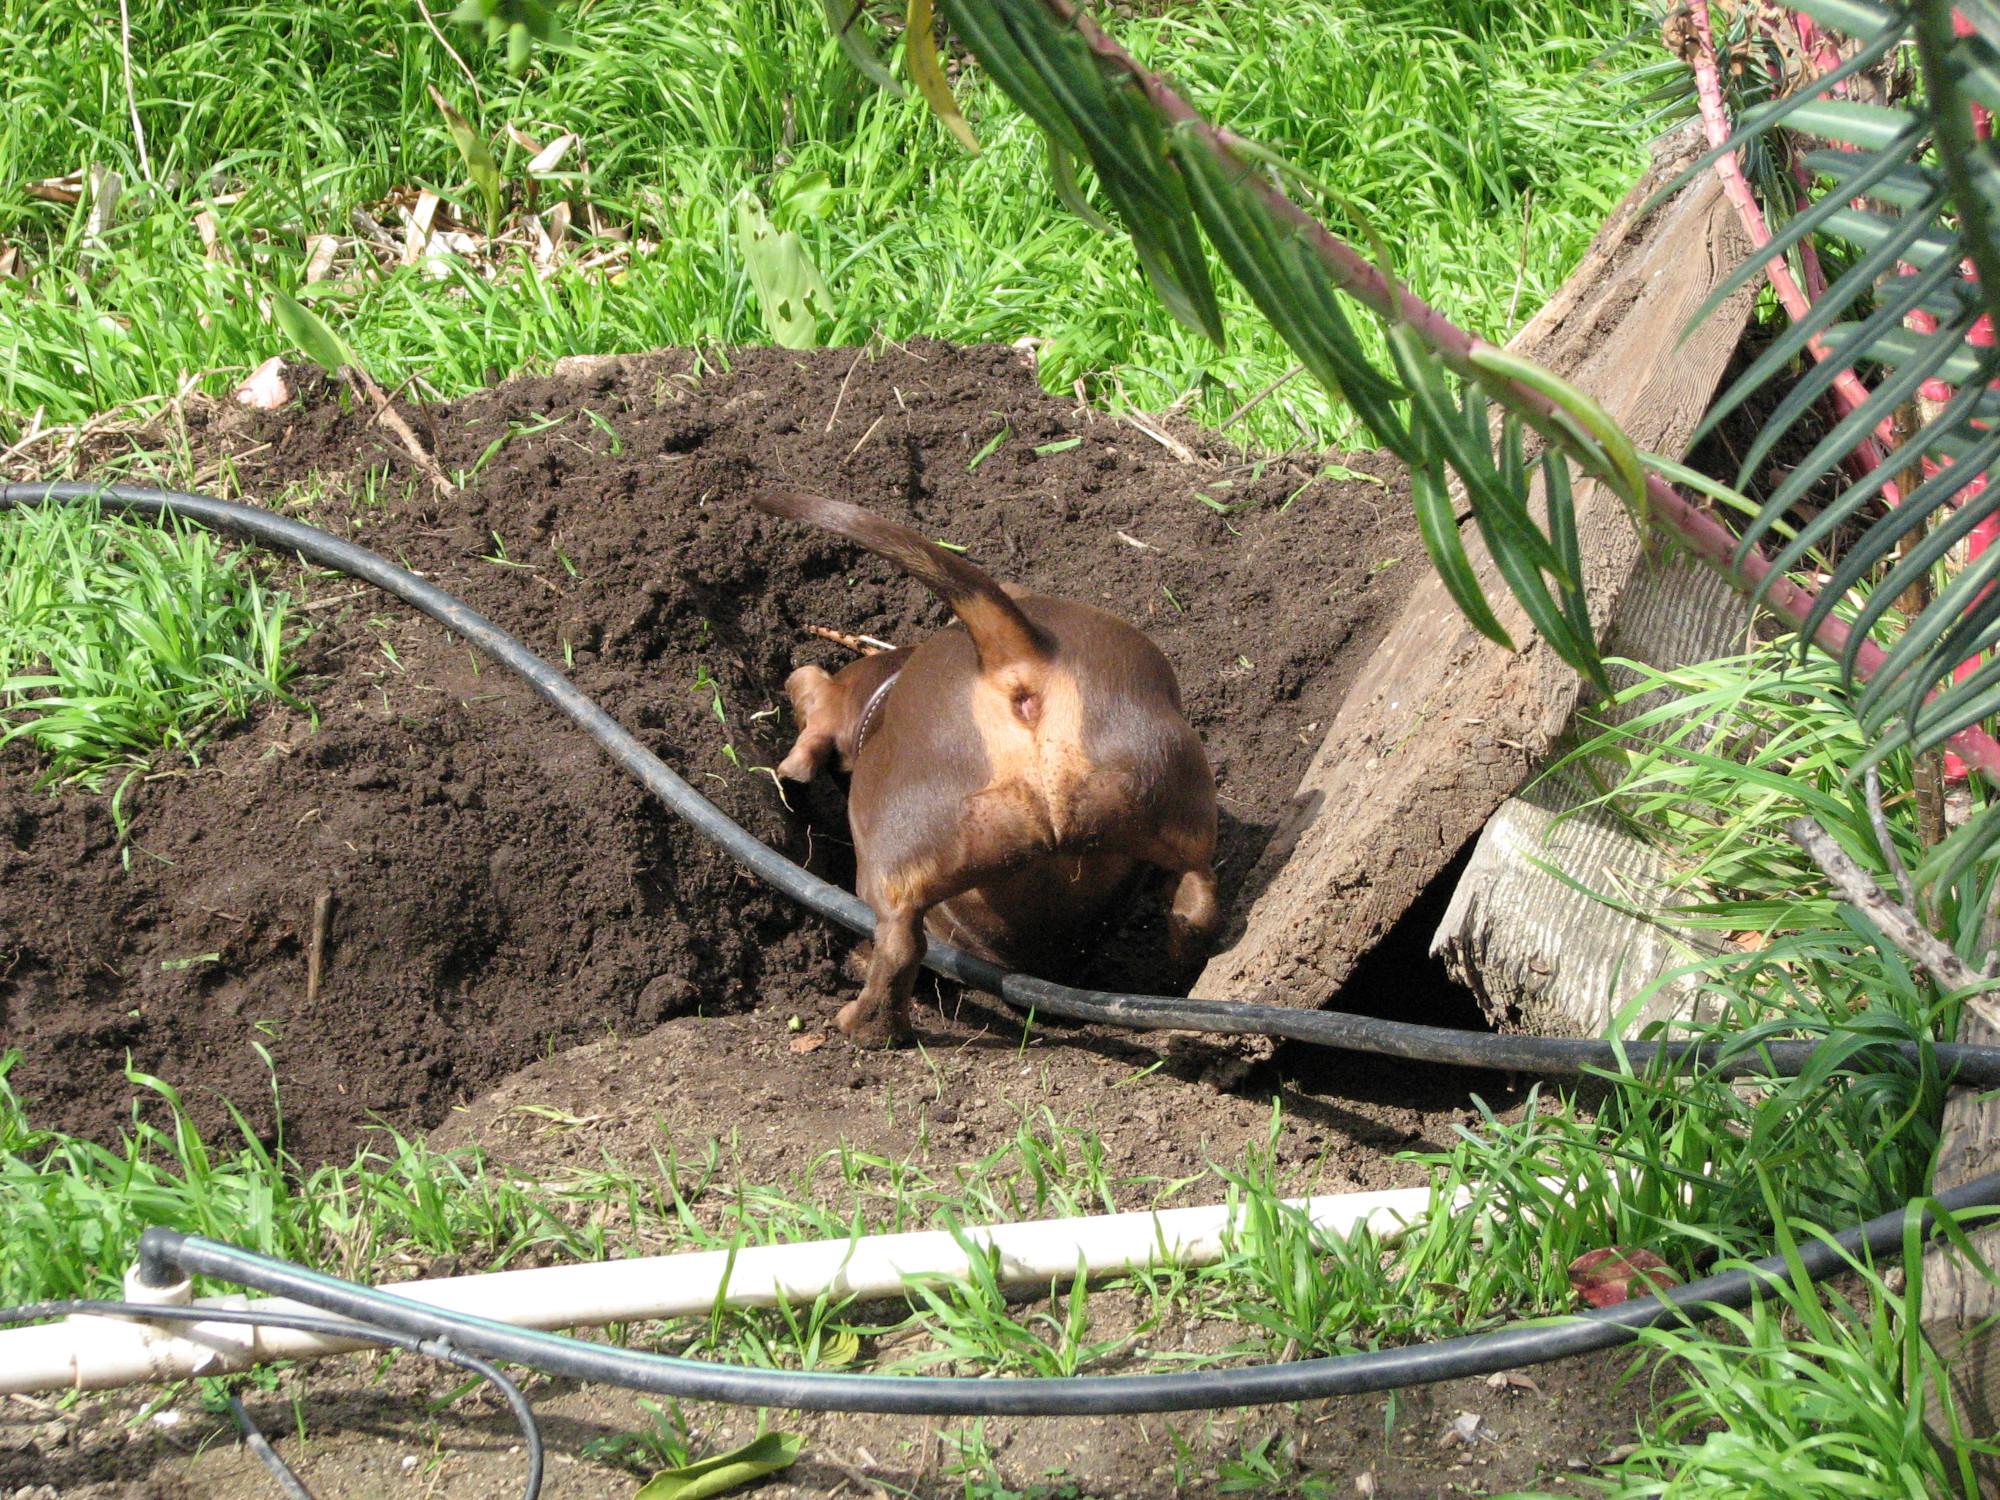 A dachshund digging a hole